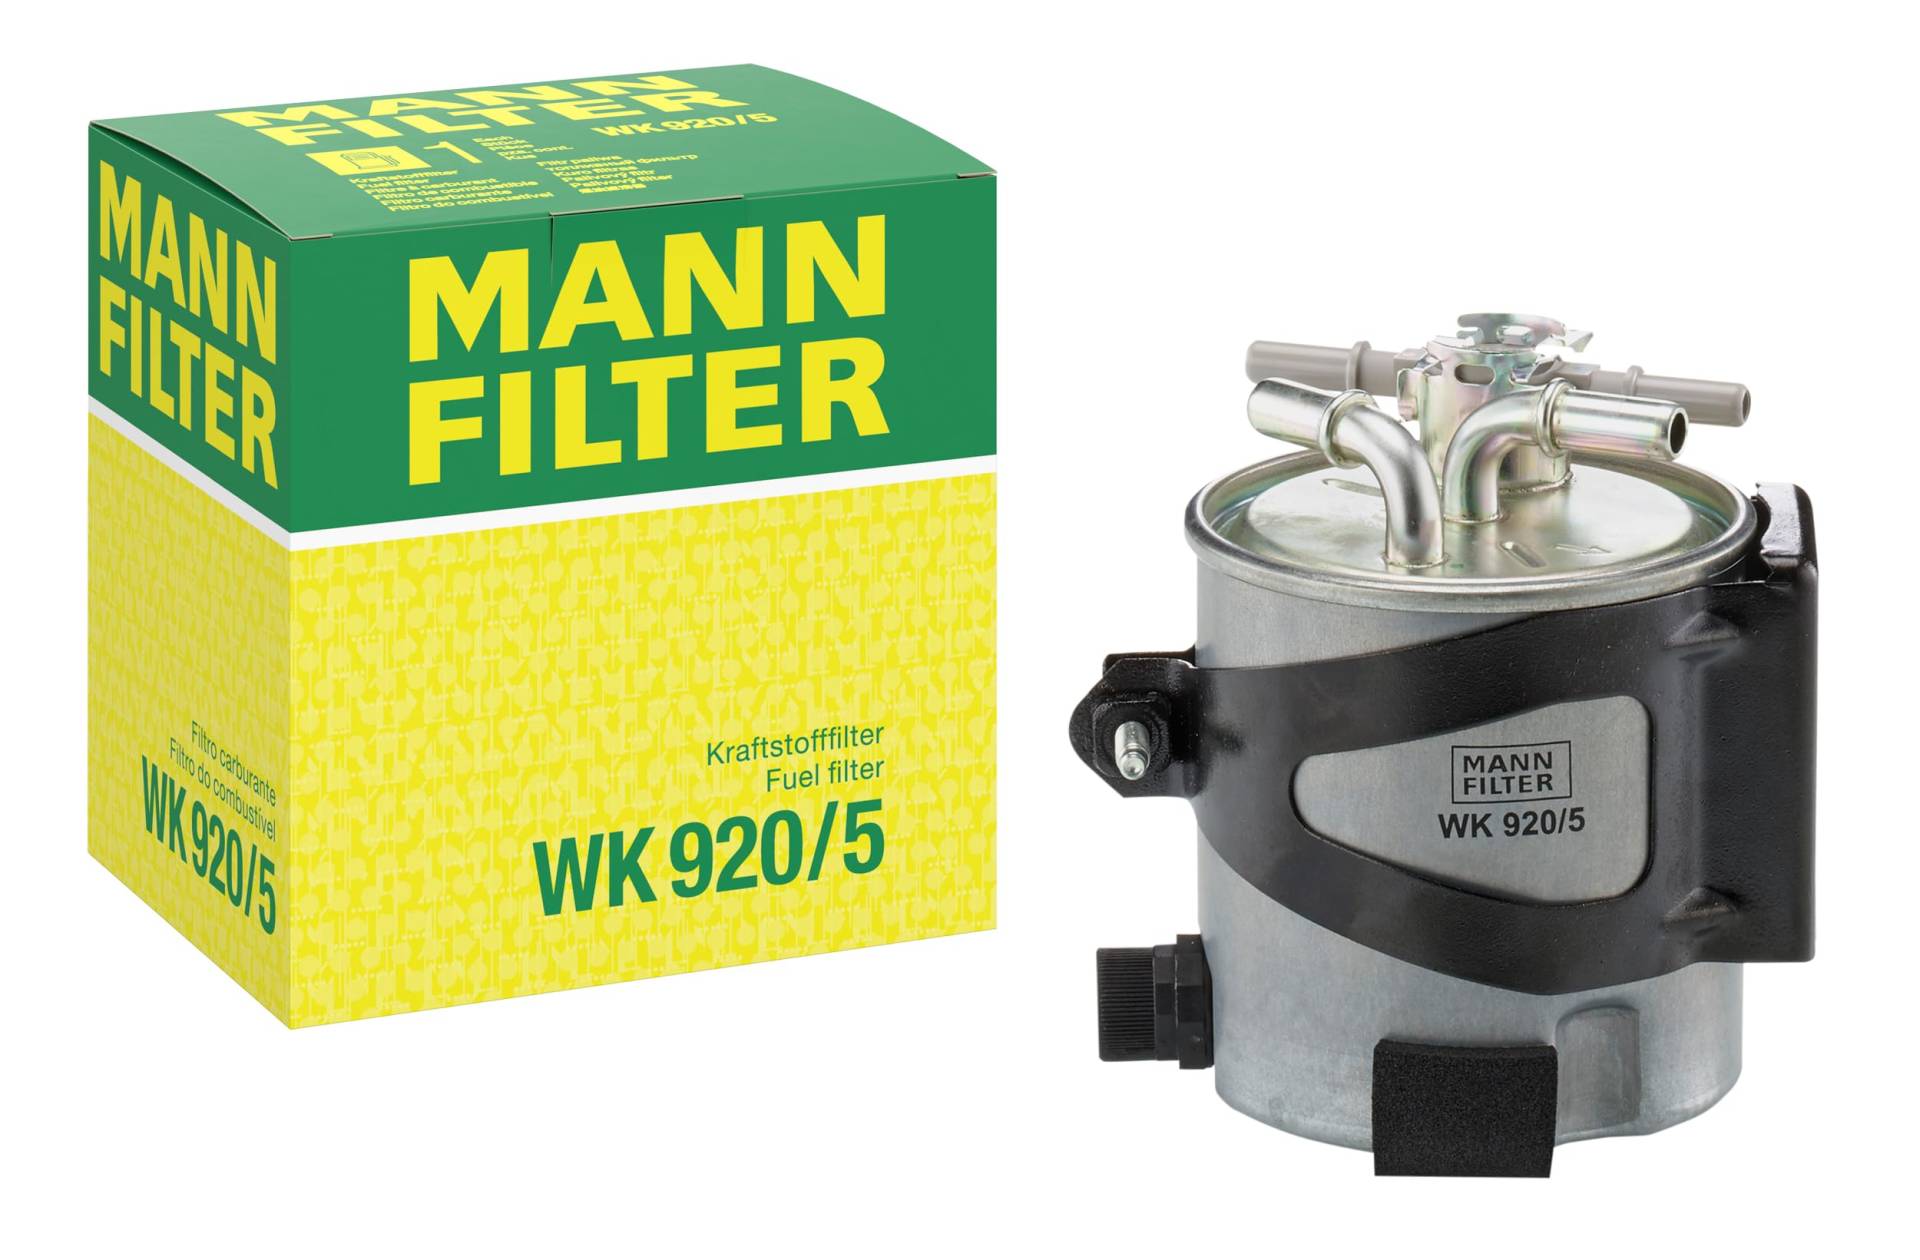 MANN-FILTER WK 920/5 Kraftstofffilter – Für PKW von MANN-FILTER